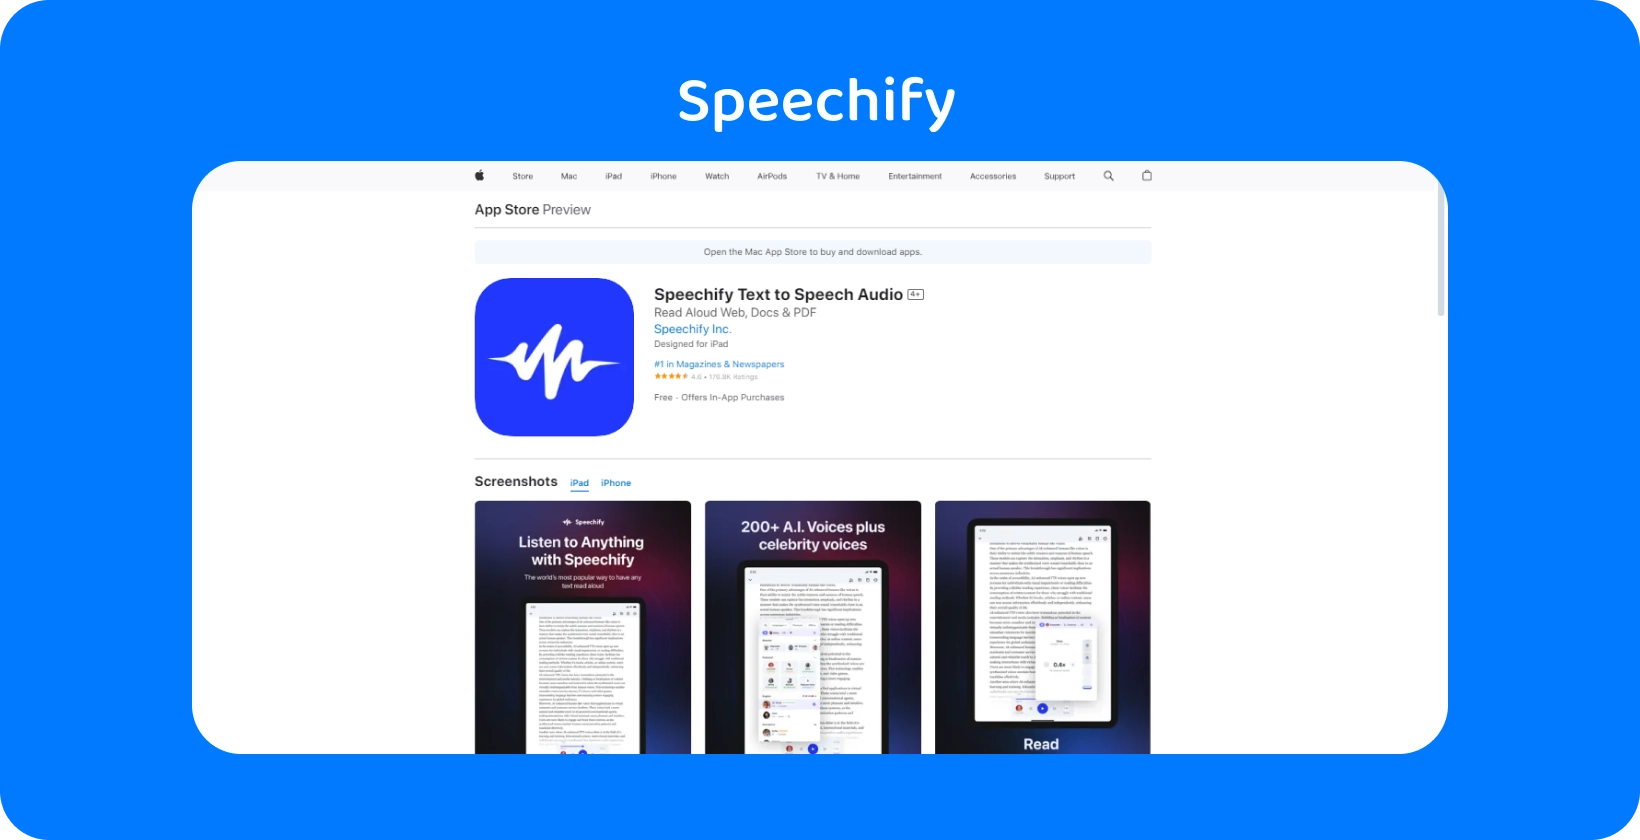 Додаток Speechify в App Store, що відображає функції перетворення тексту в мову з різними голосовими опціями.